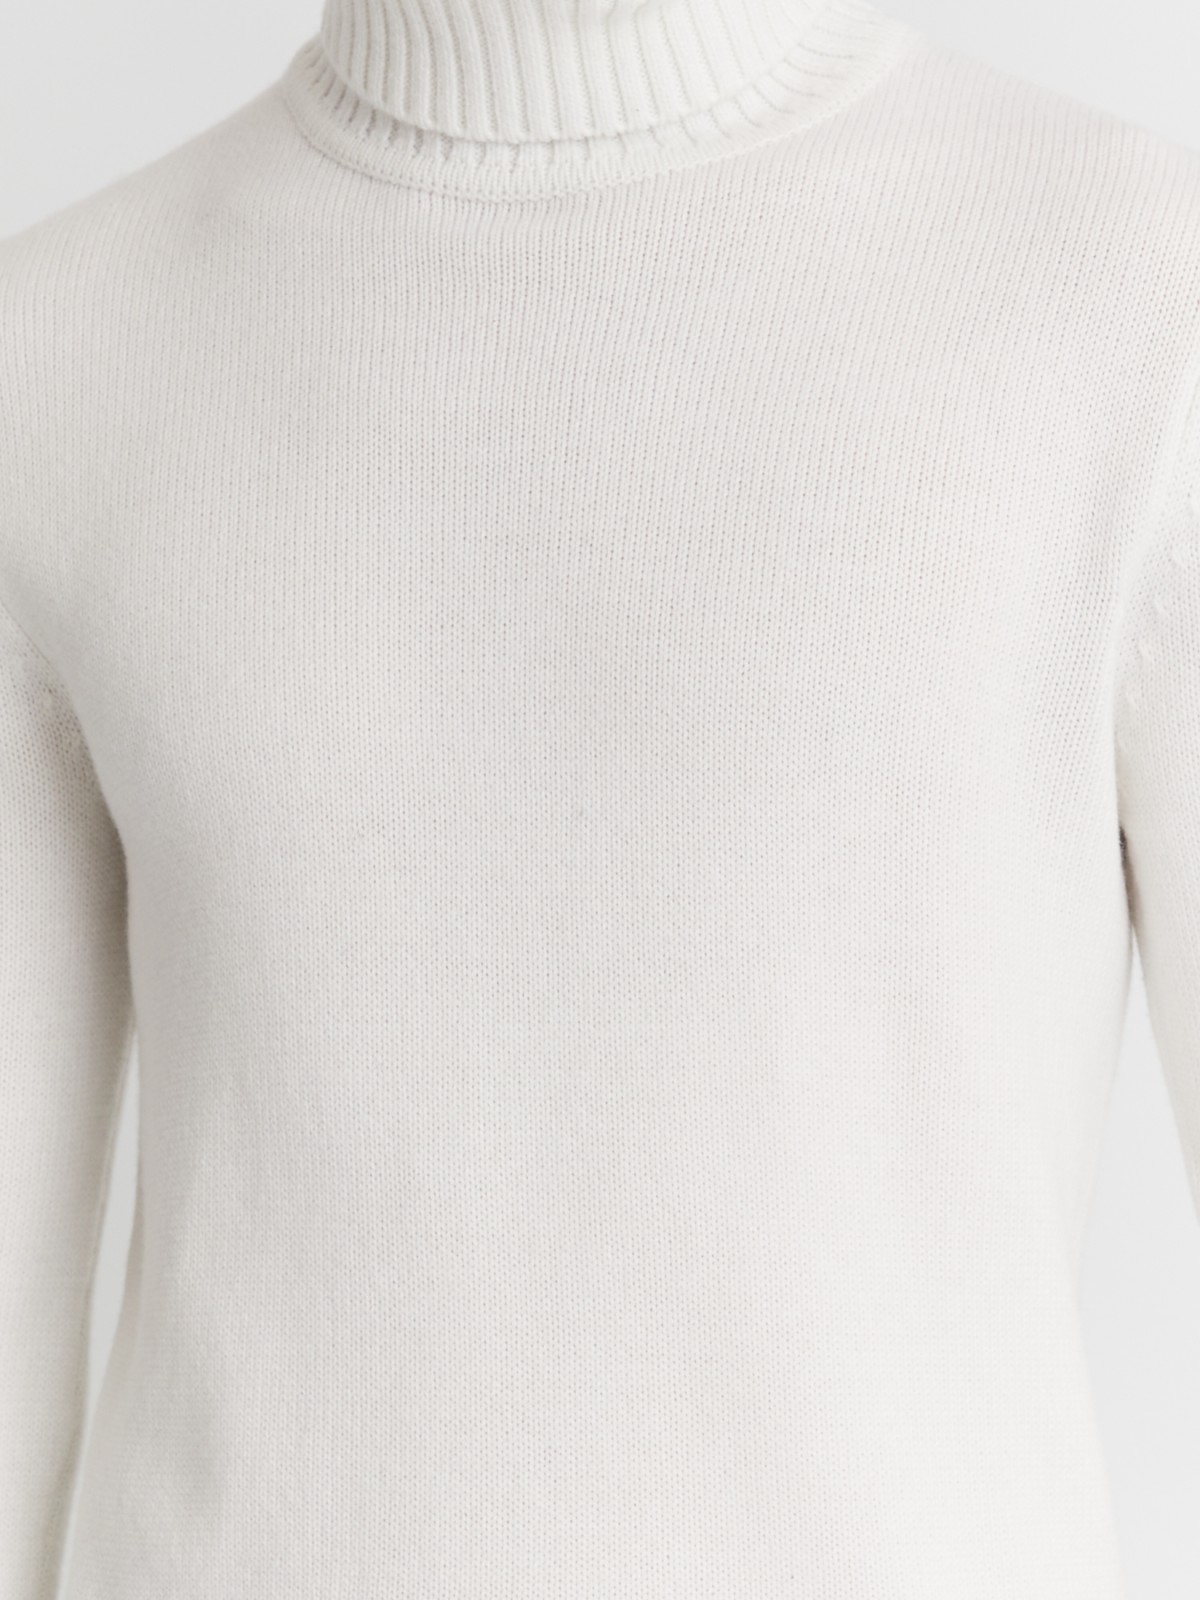 Вязаная шерстяная водолазка-свитер с горлом zolla 013436163072, цвет молоко, размер S - фото 5